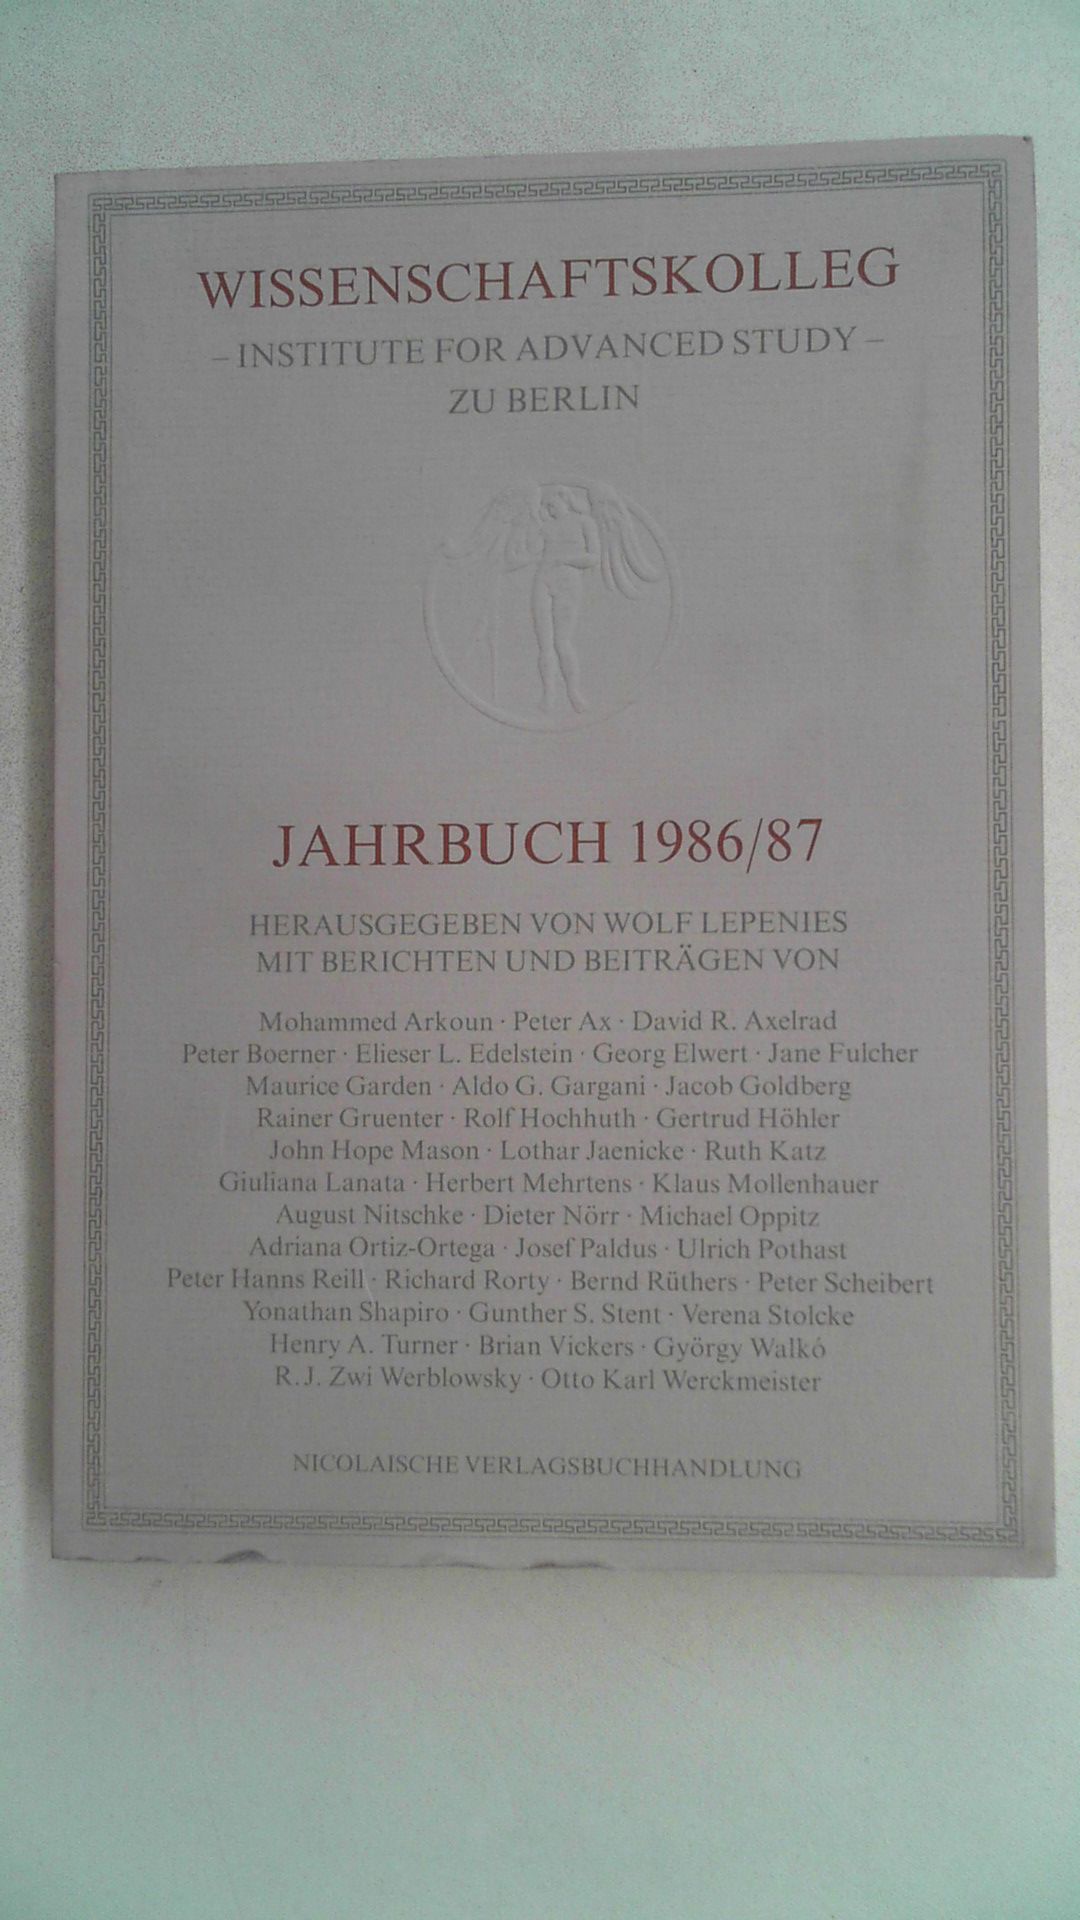 Wissenschaftskolleg Jahrbuch 1986/87 (Institute for Advanced Study zu Berlin). - Lepenies, Wolf (Hg.)